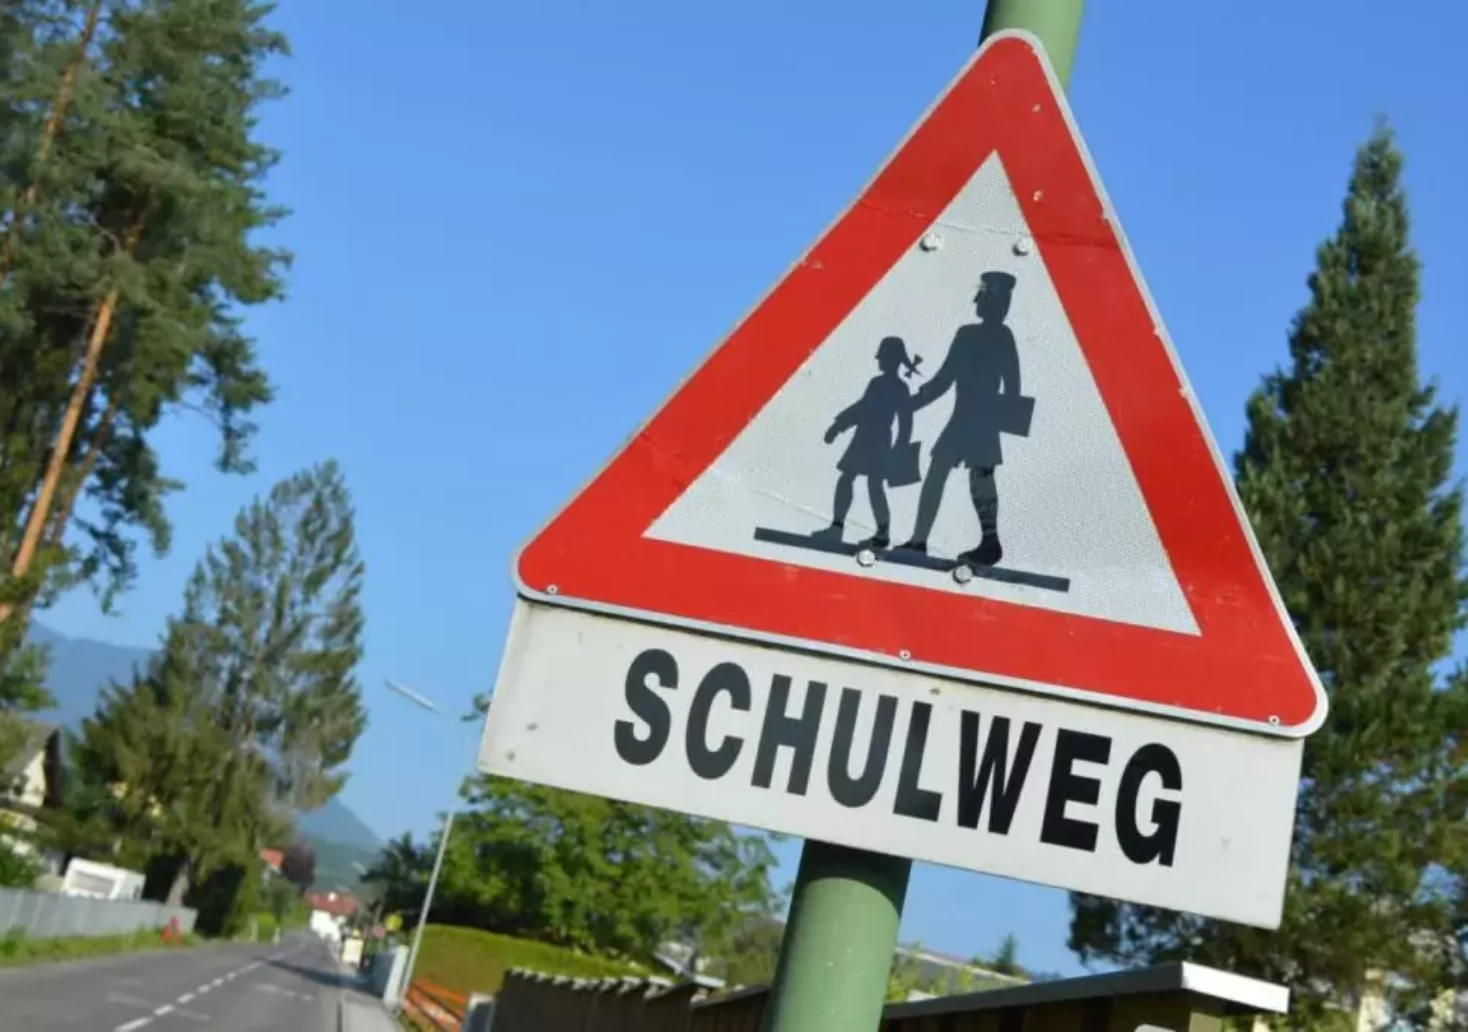 Bild auf 5min.at zeigt das Schild "Schulweg".